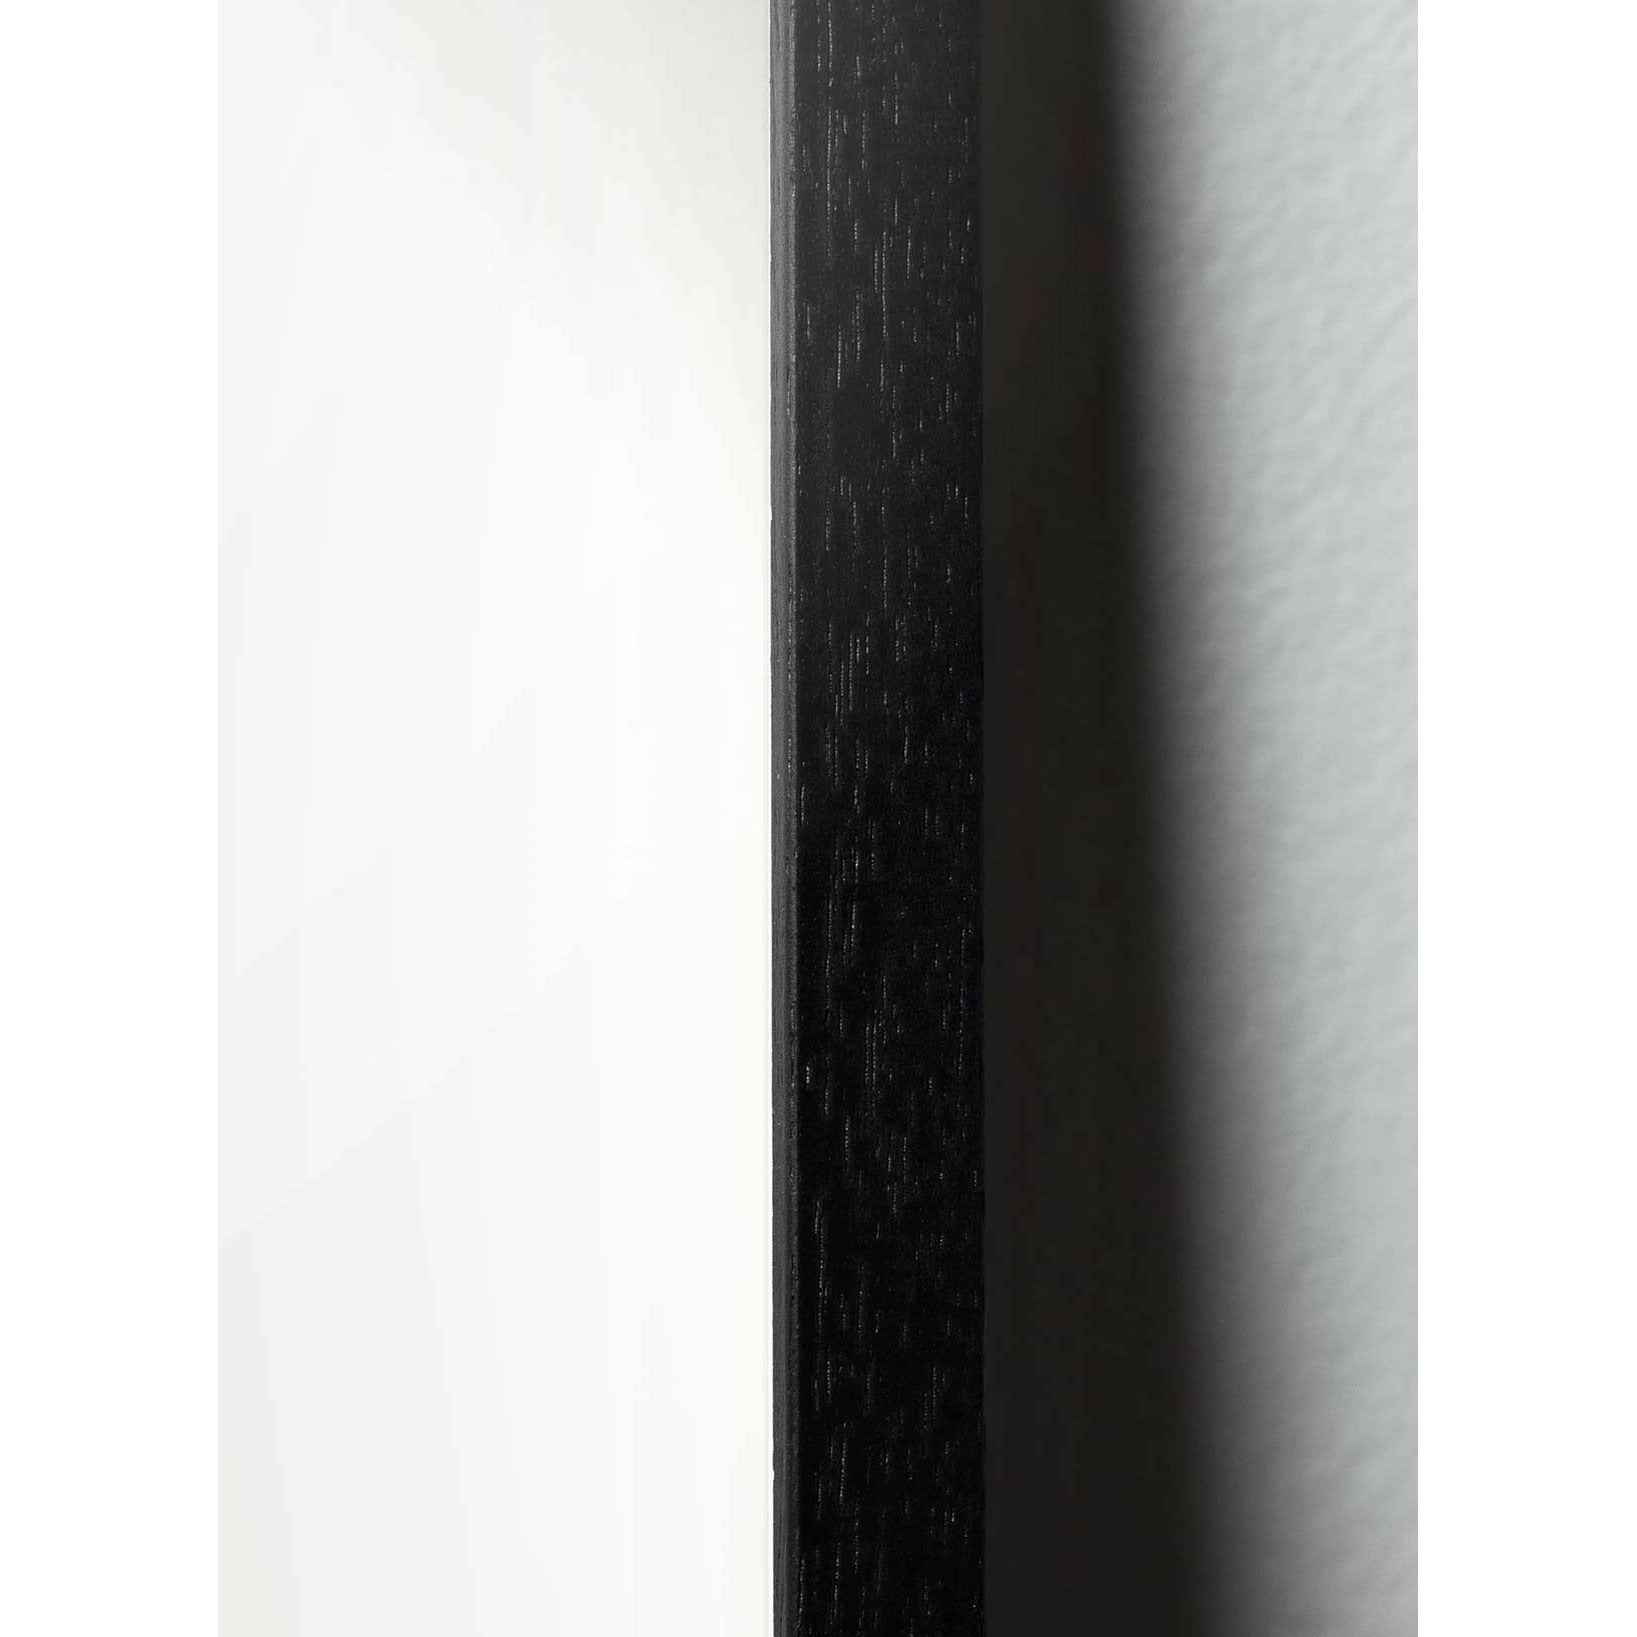 Brainchild Schwanenparade Poster, Rahmen aus schwarz lackiertem Holz, 30x40 cm